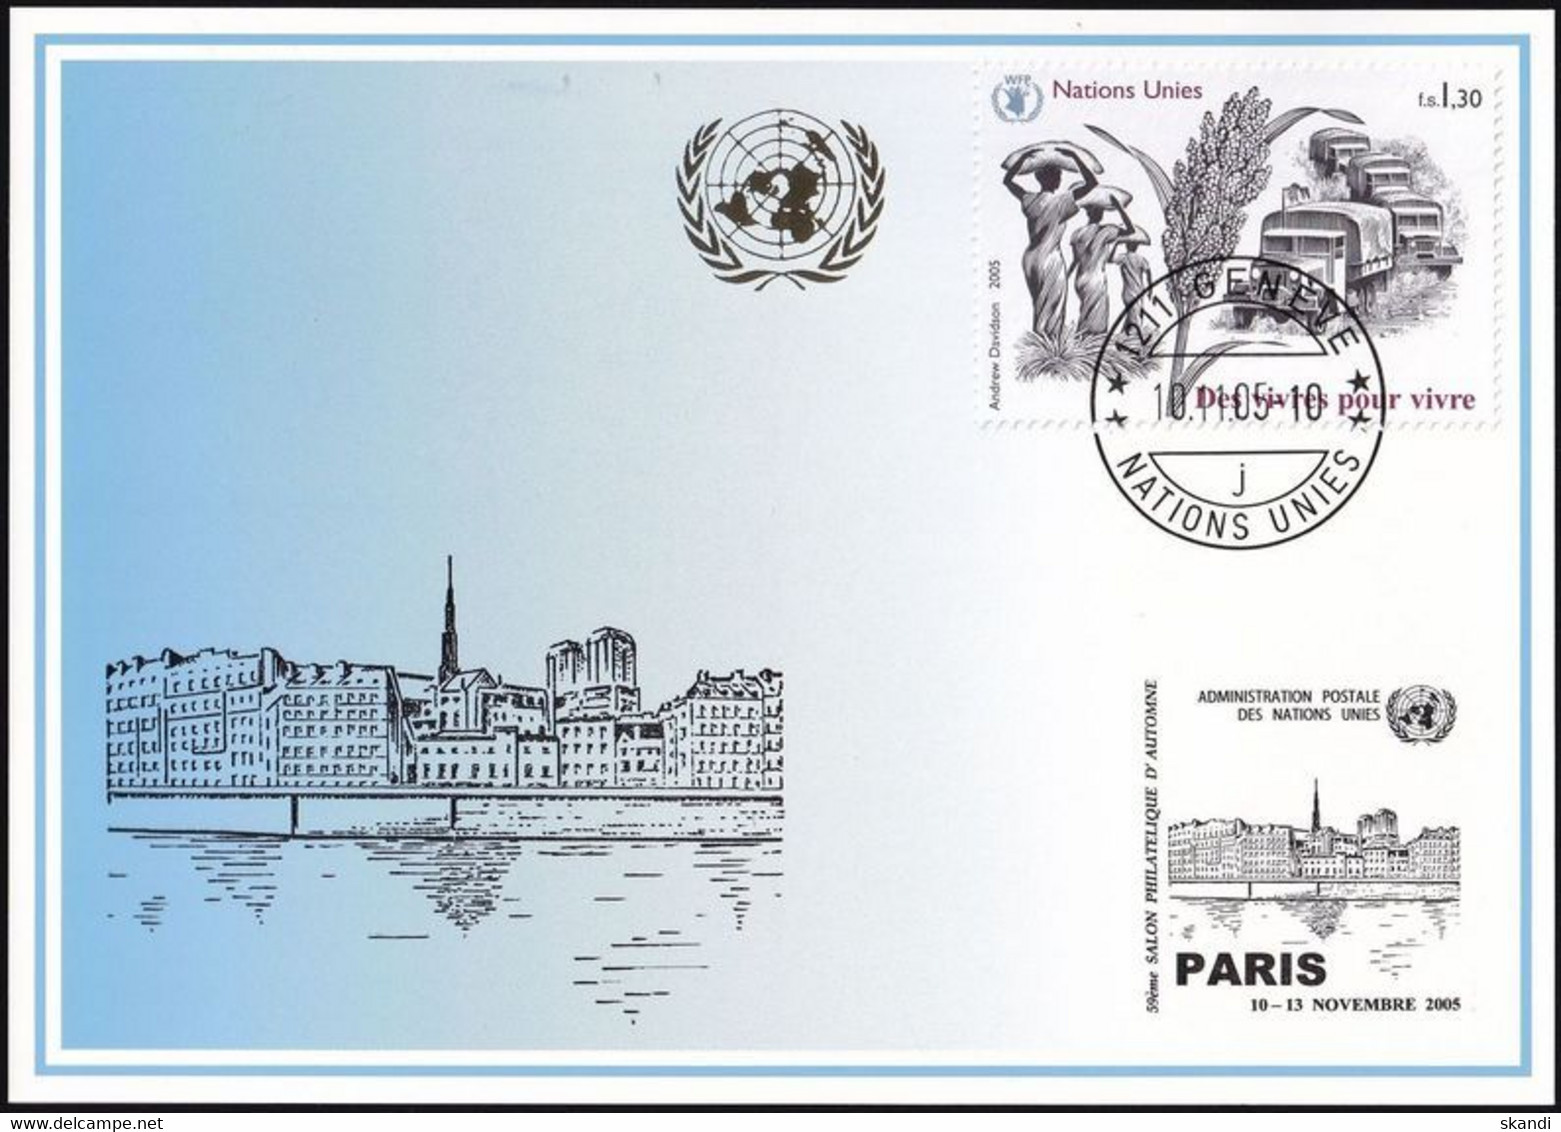 UNO GENF 2005 Mi-Nr. 355 Blaue Karte - Blue Card  Mit Erinnerungsstempel PARIS - Covers & Documents